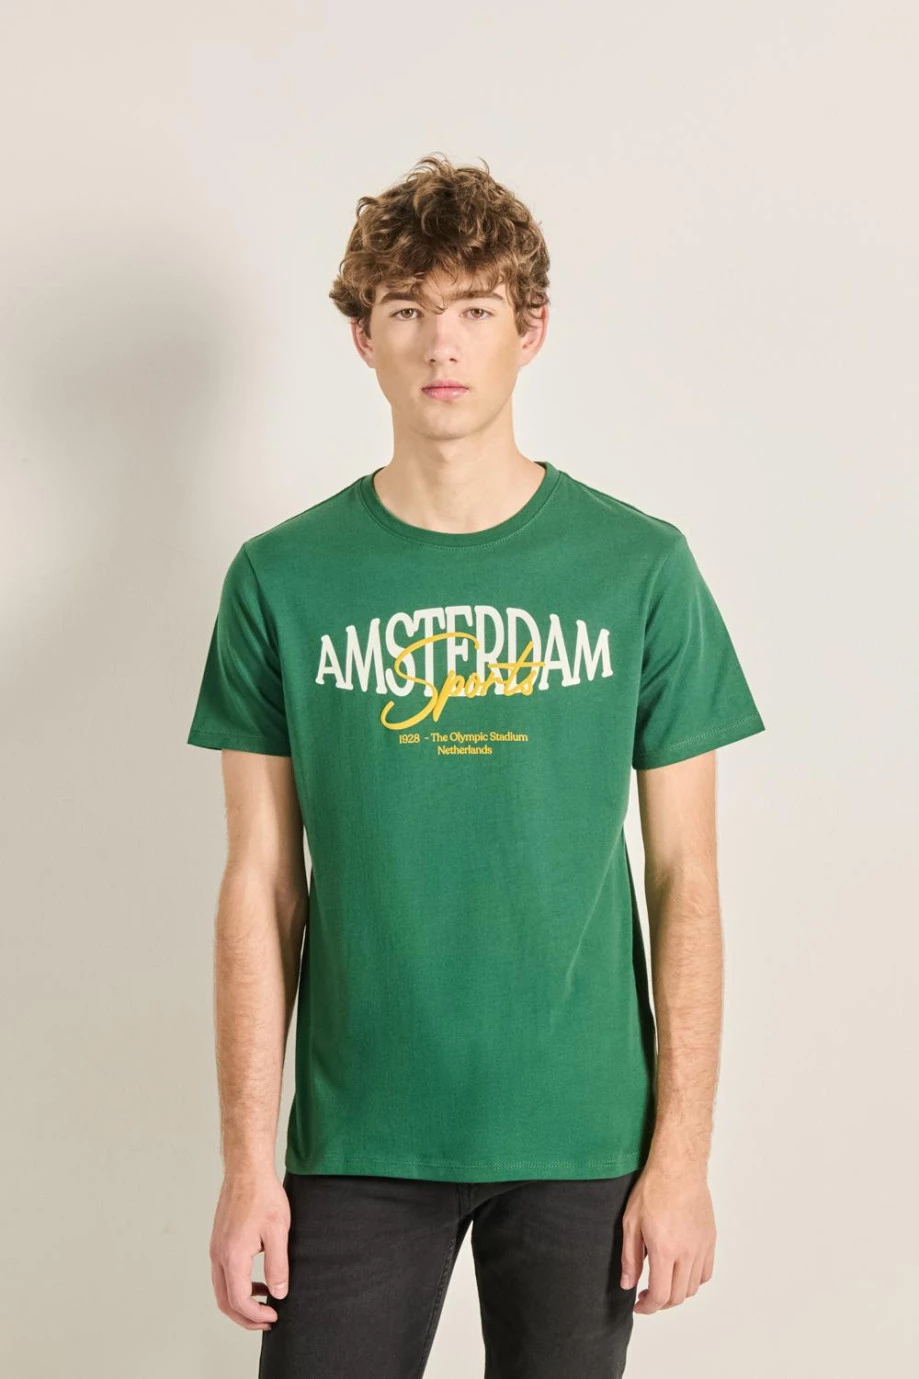 Camiseta verde con cuello redondo y texto college en frente